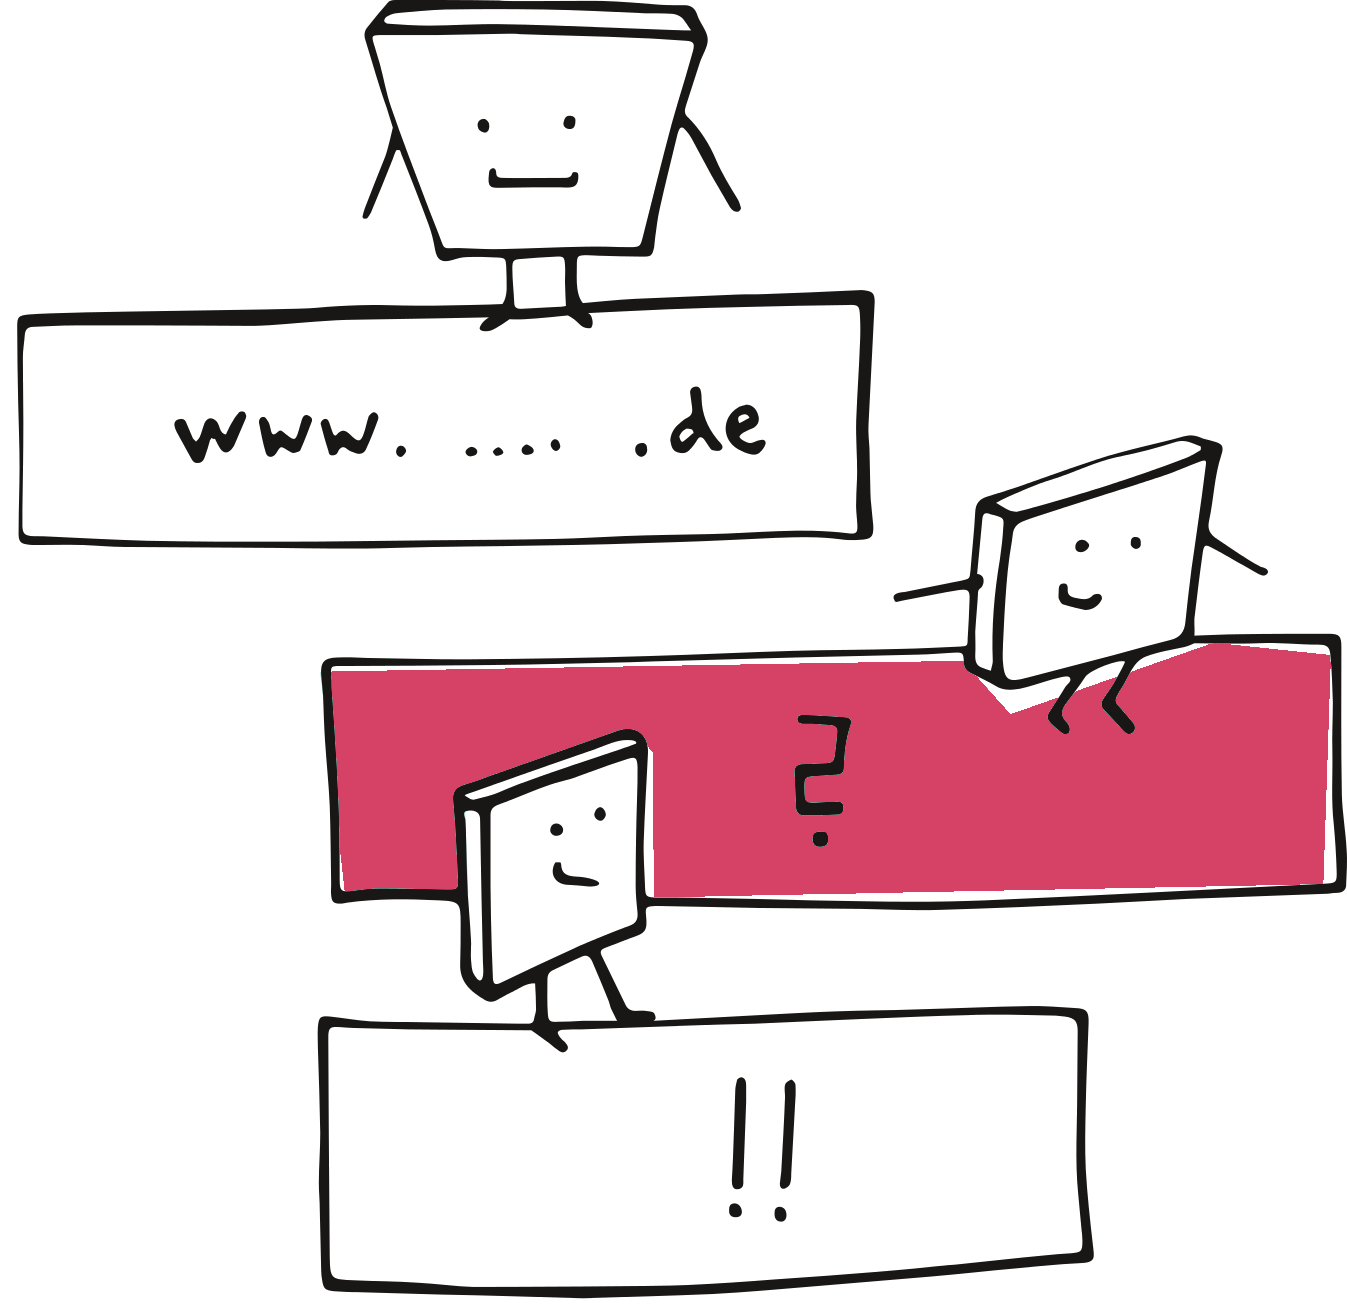 Grafische Darstellung mit drei beschrifteten Boxen. Die erste enthält den Test "www. ... .de", die zweite ein Fragezeichen und die dritte zwei Ausrufezeichen. Kleine Comicfiguren tanzen auf den Boxen.